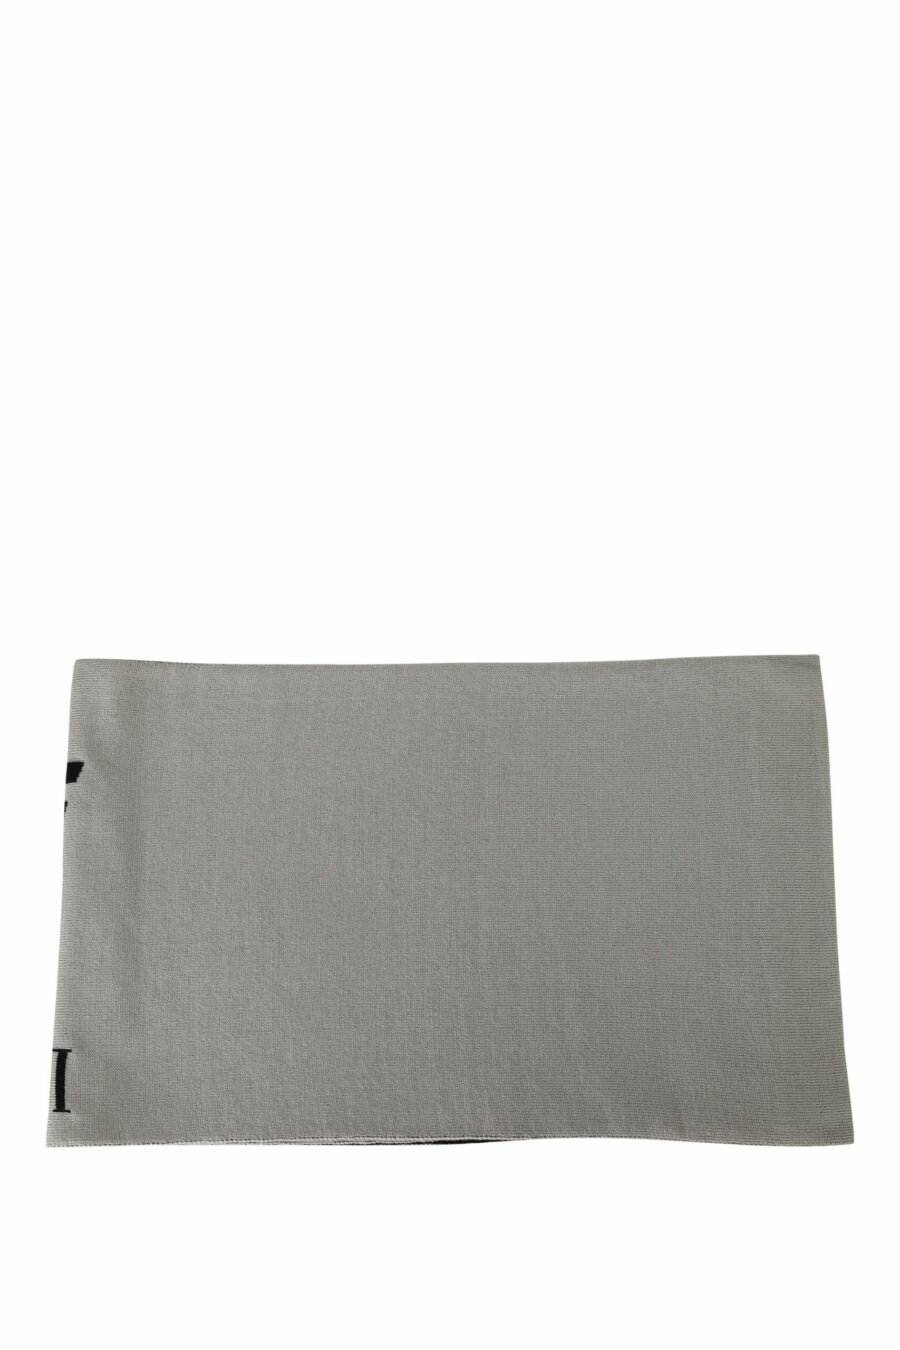 Hellgrauer Schal mit weißem vertikalen "lux identity" Logo - 8056787823051 2 skaliert